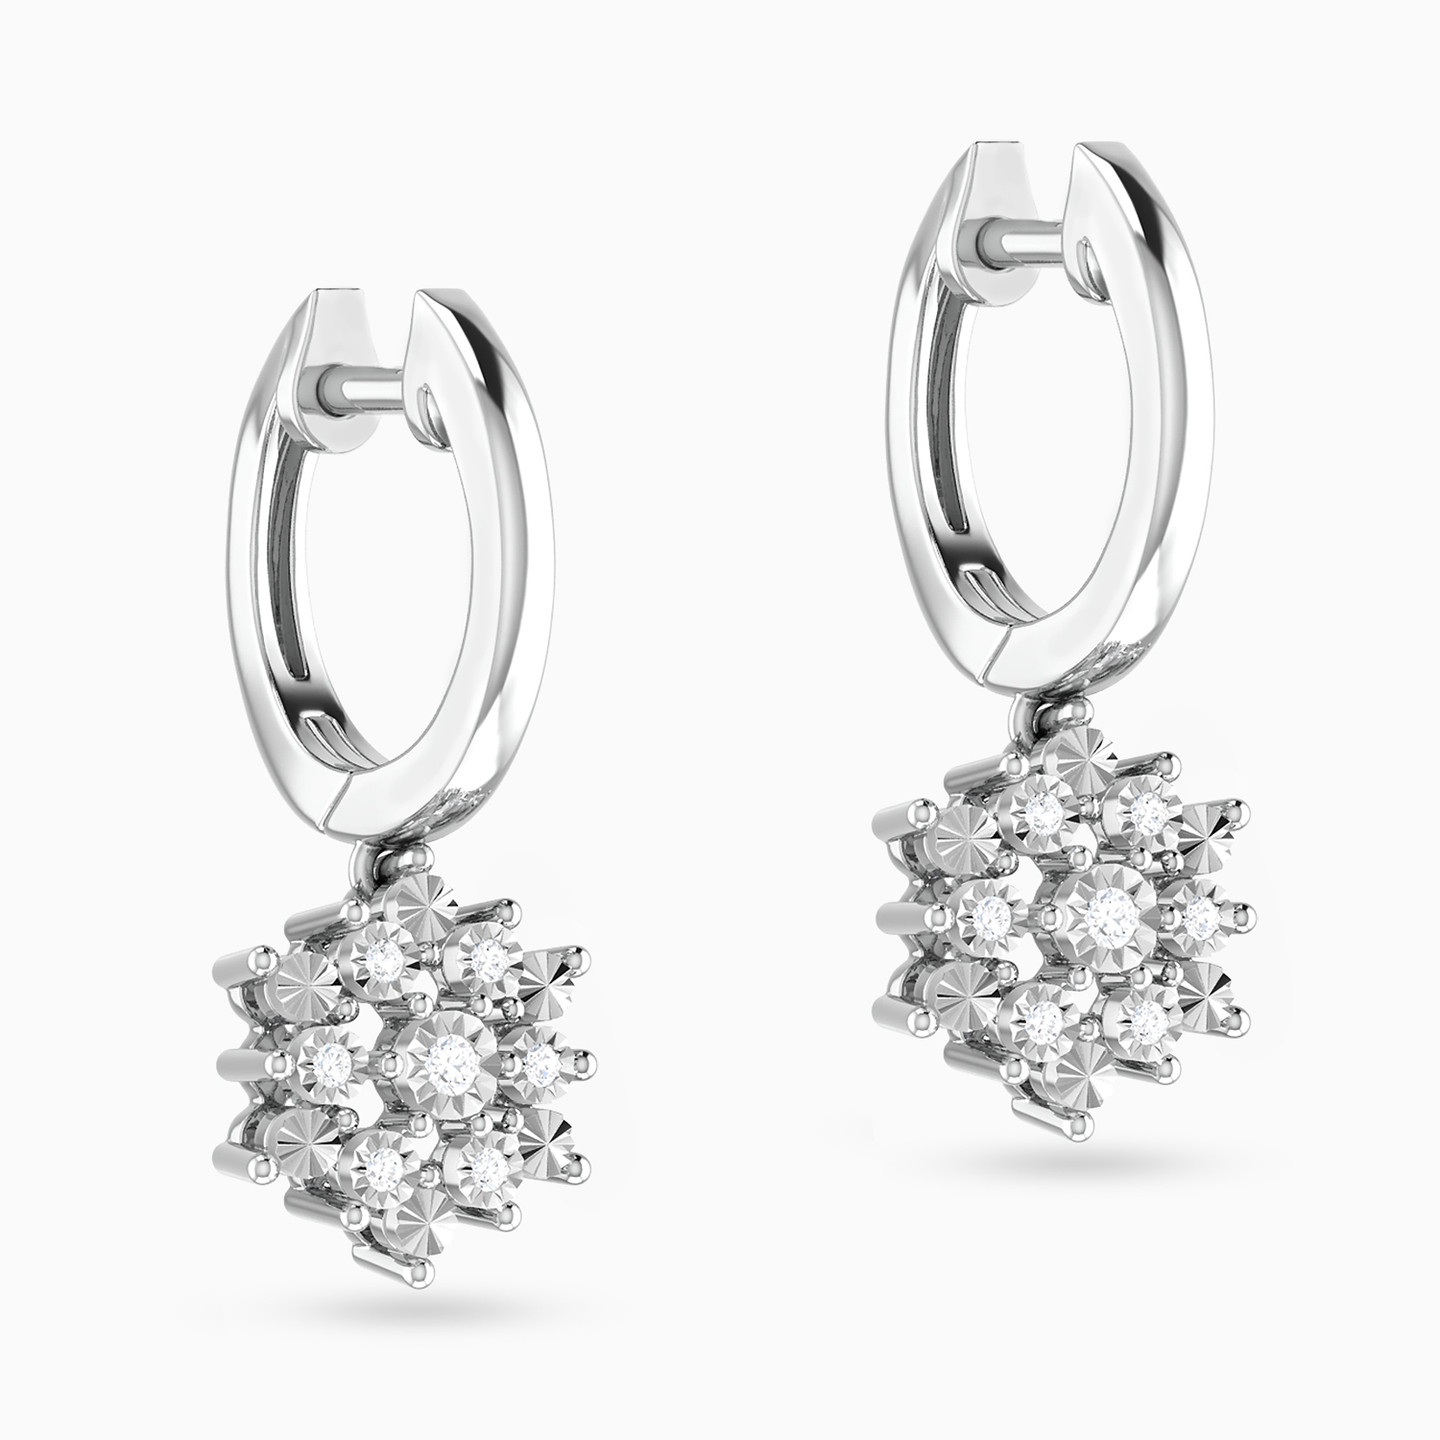 18K Gold Diamond Drop Earrings - 3